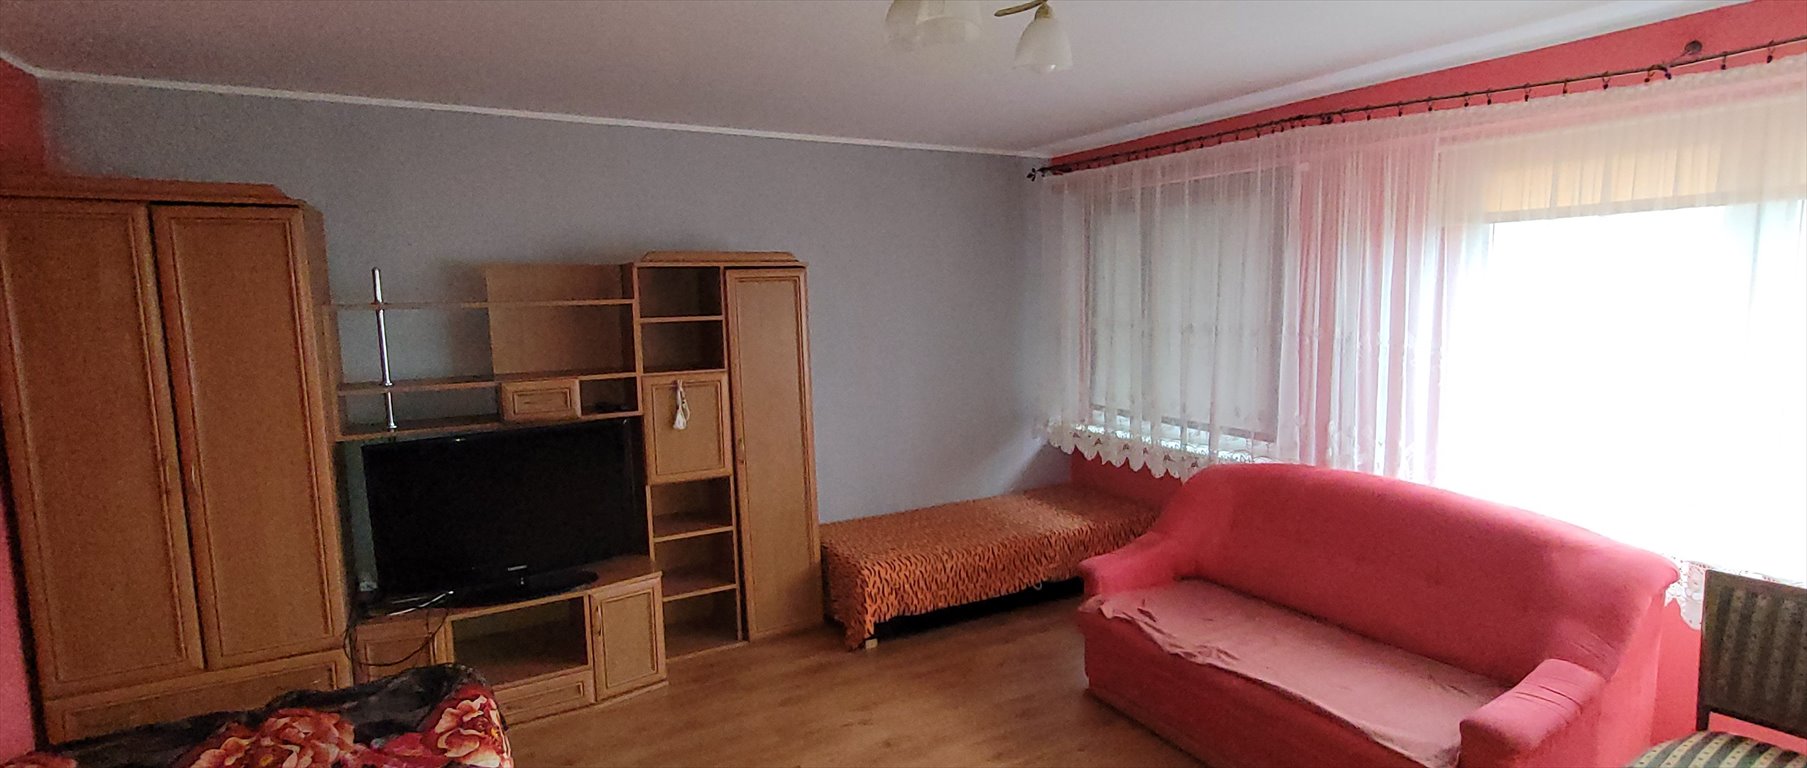 Mieszkanie trzypokojowe na sprzedaż Trzemeszno, Piastowska  58m2 Foto 2